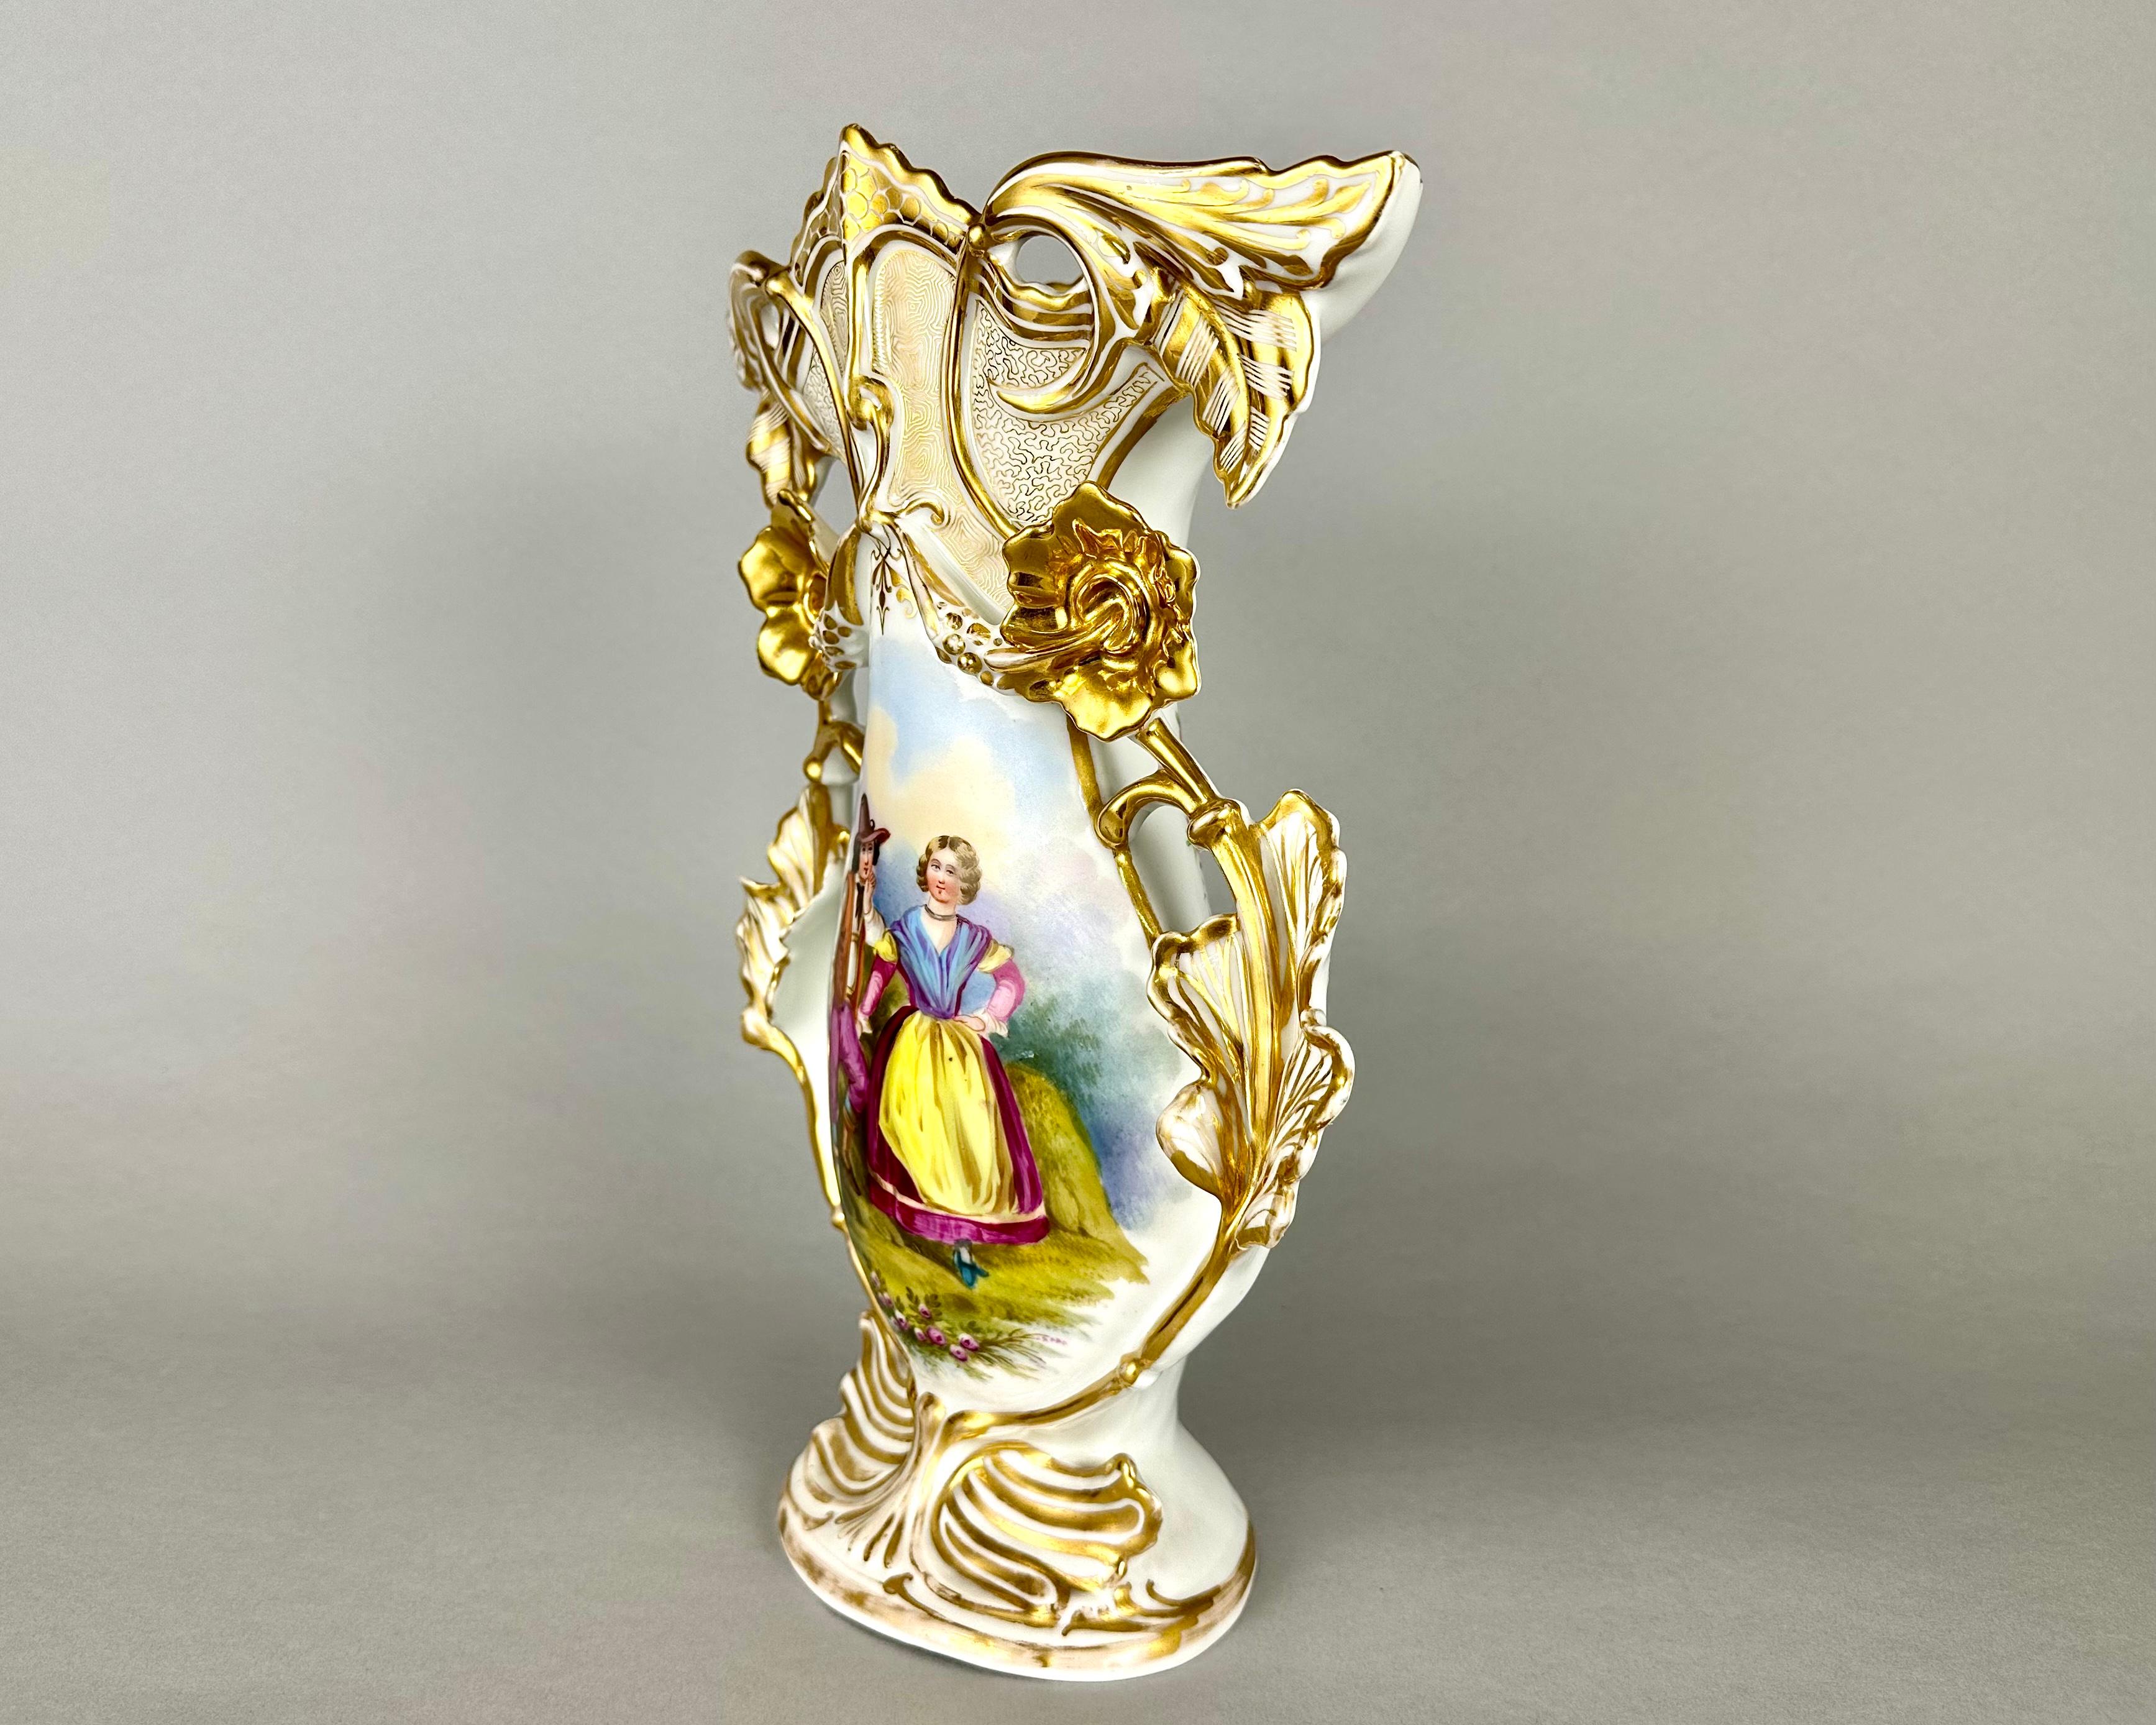 Superbe vase ancien en porcelaine avec des poignées en forme de fleurs et des sommets élaborés, fabriqué en France à la fin du 19e siècle et au début du 20e siècle.

Ce modèle est orné d'un décor rococo dans le style des premiers Meissen.

Motifs